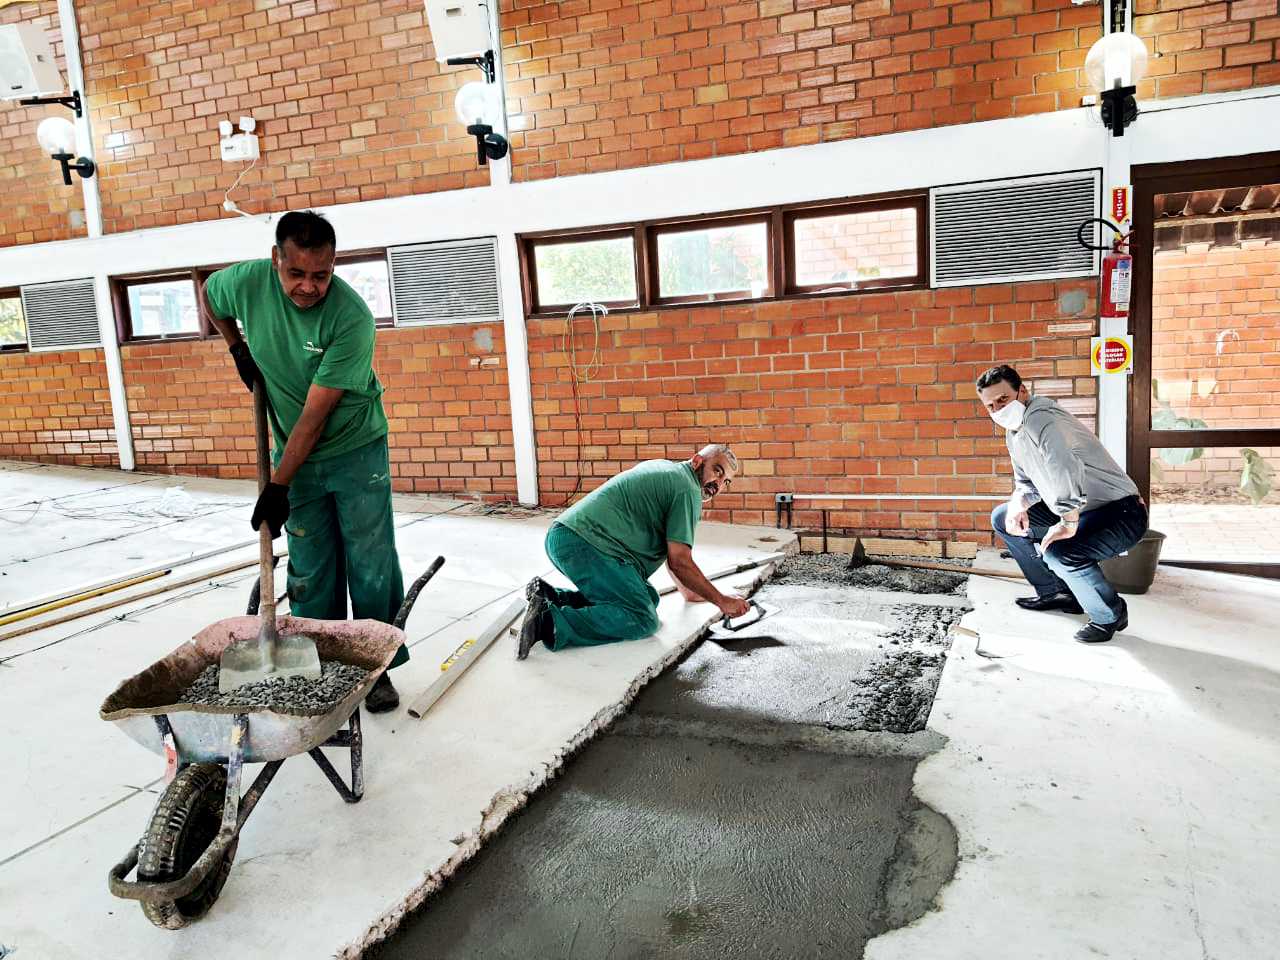 Ambiente interno, chão de concreto, dois homens de uniforme trabalhando no piso, um homem com camisa agachado assistindo. 